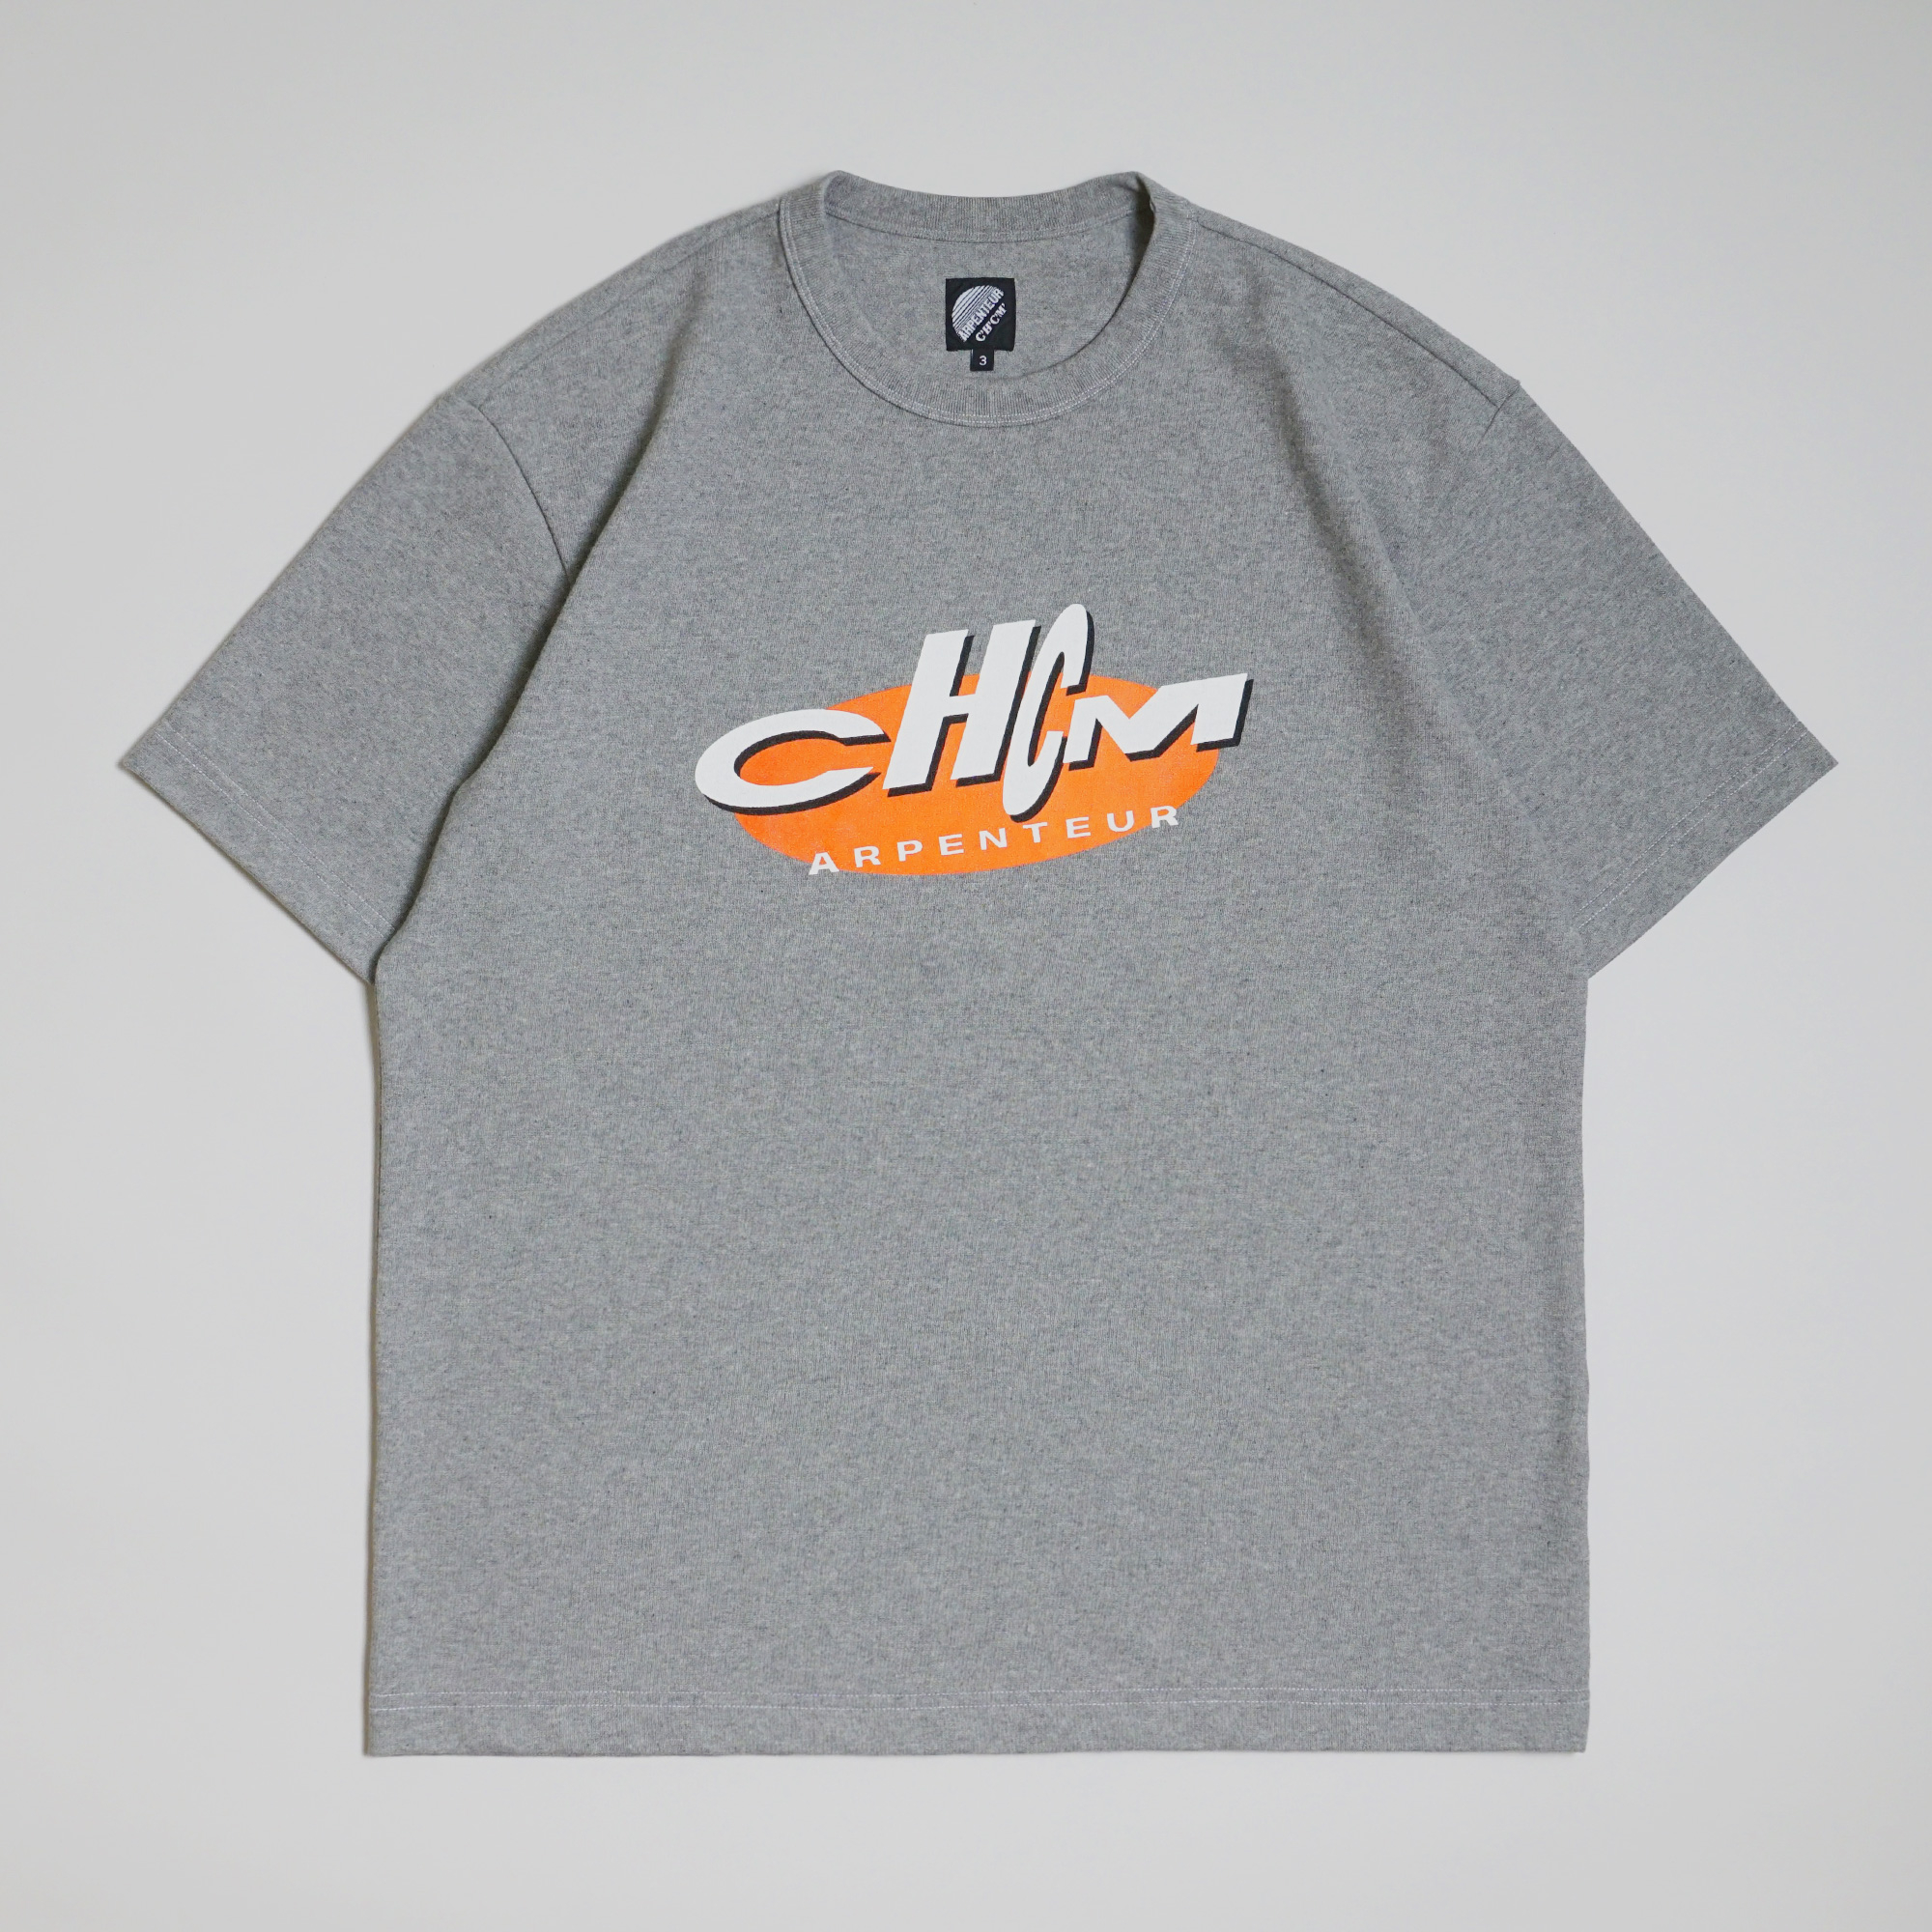 T-shirt GRAPHIQUE par Arpenteur pour C'H'C'M'